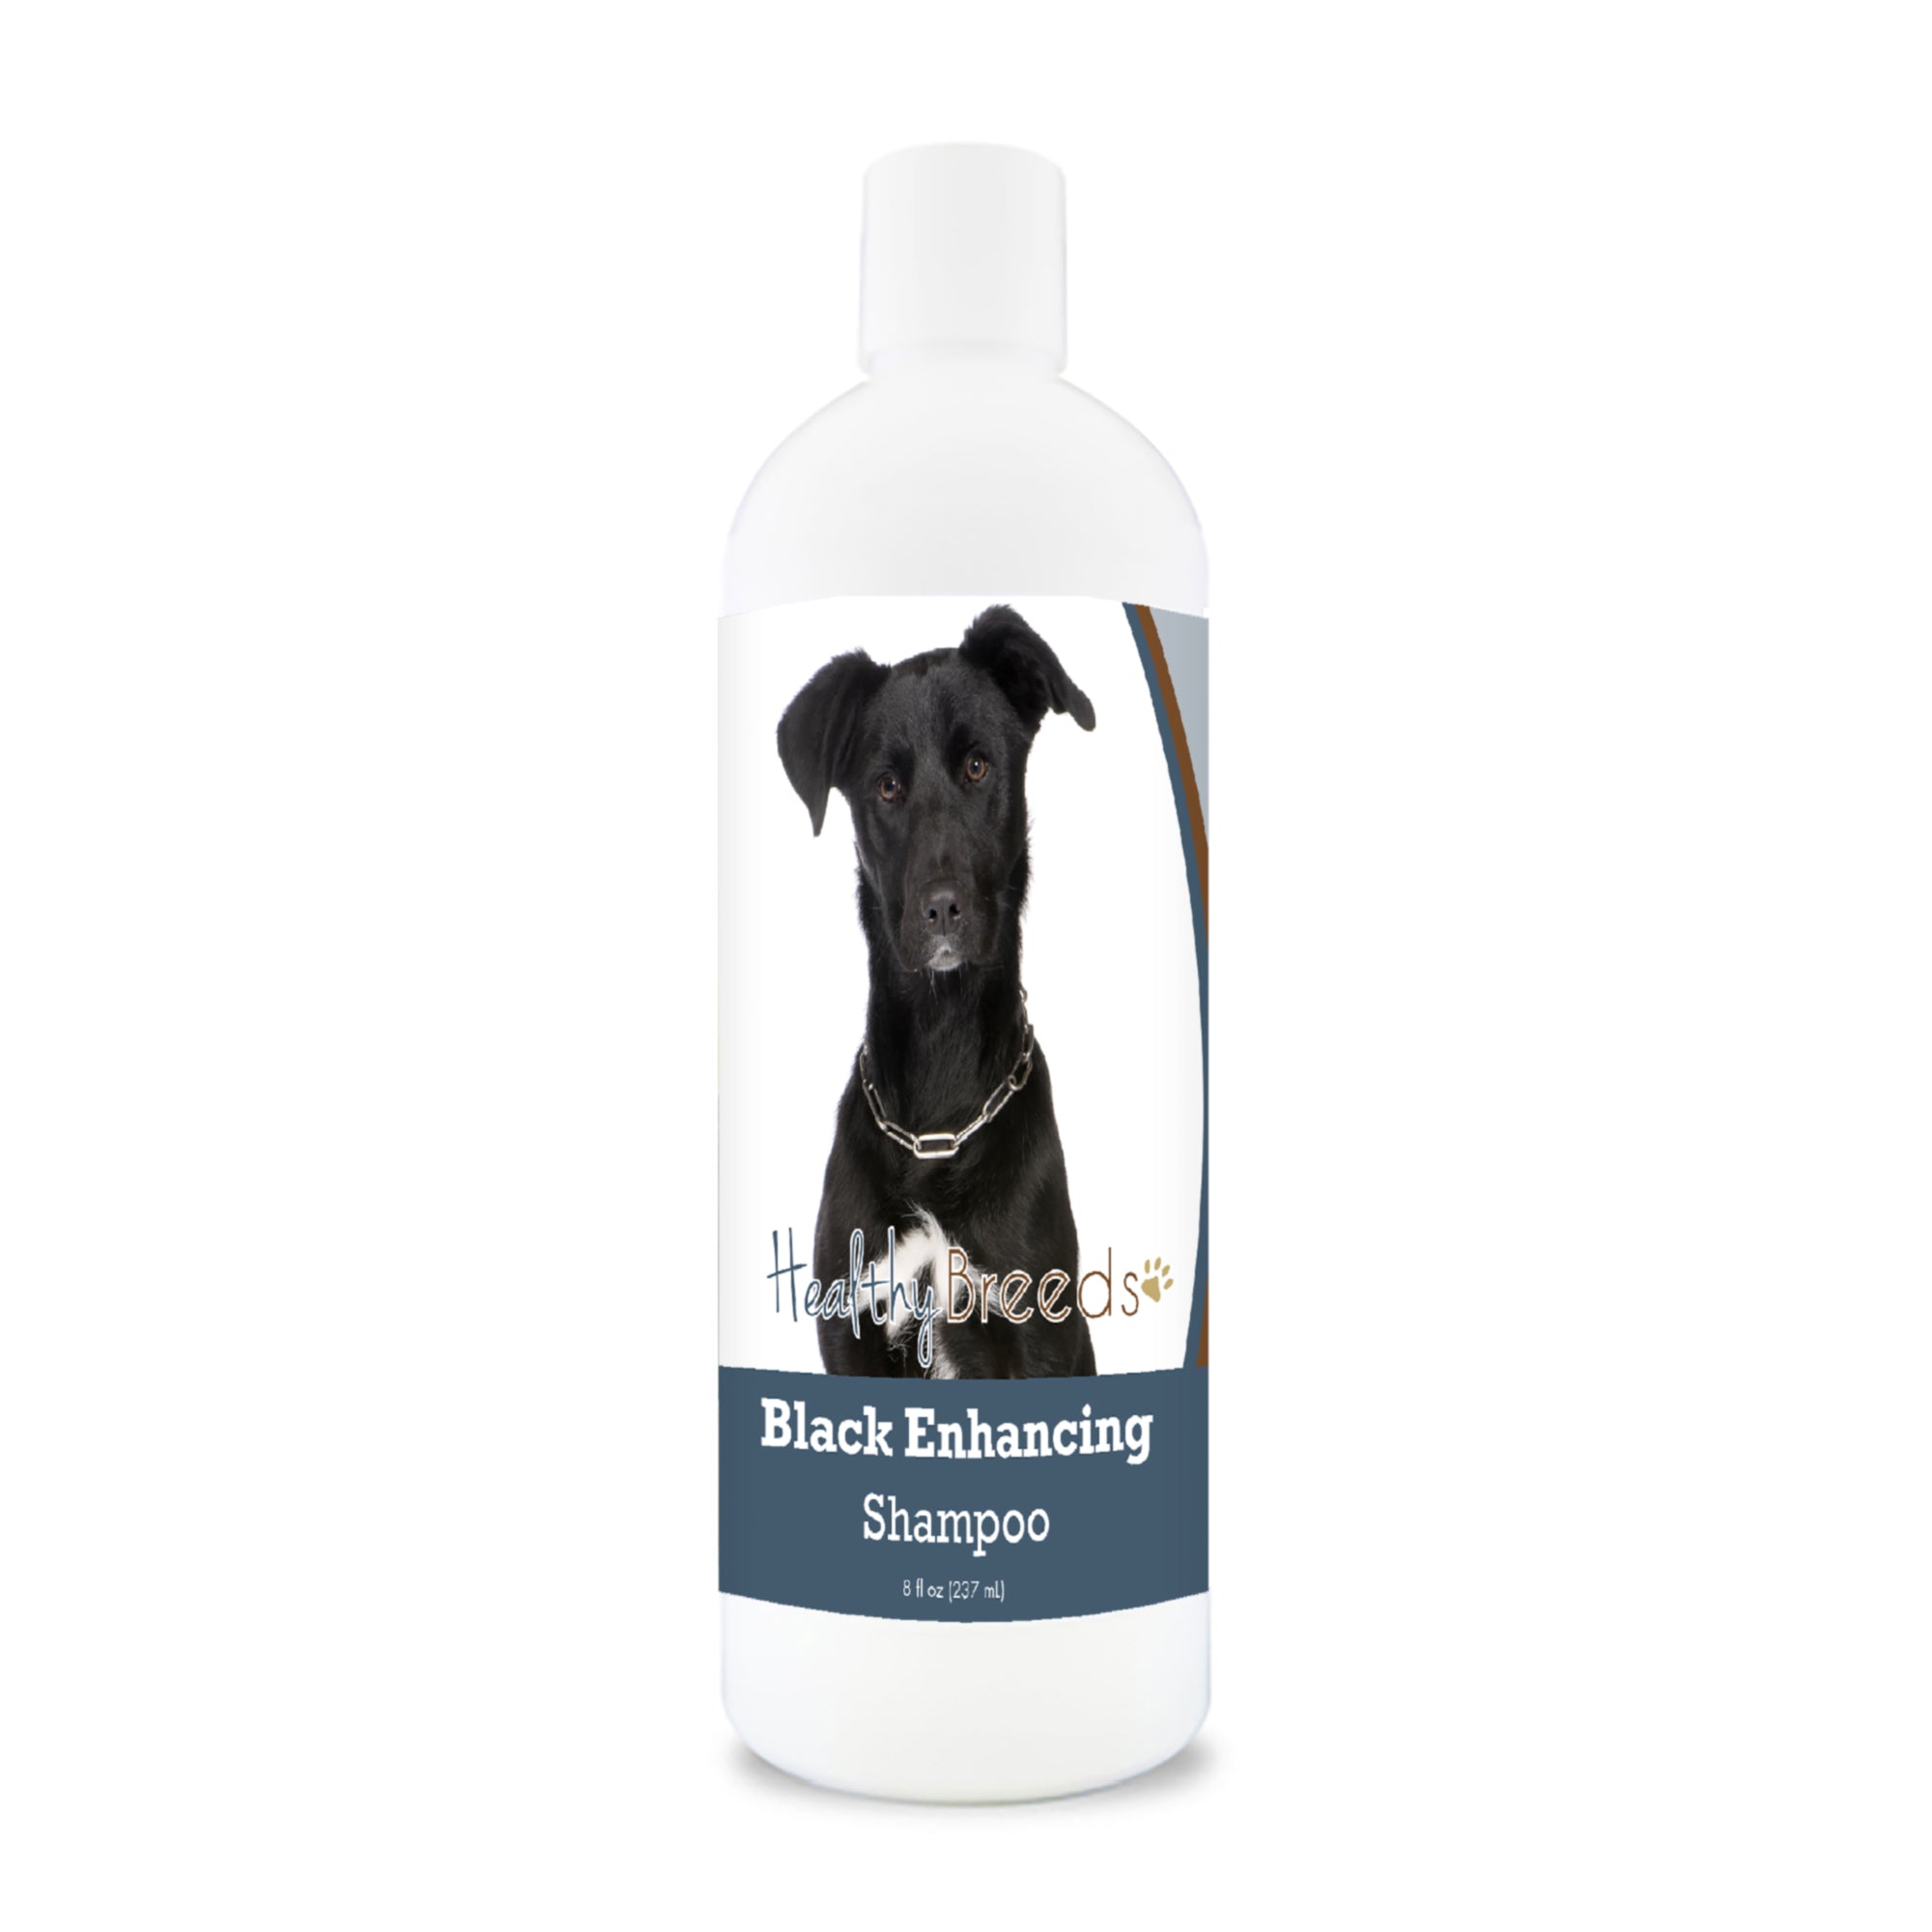 Mutt Black Enhancing Shampoo 8 oz